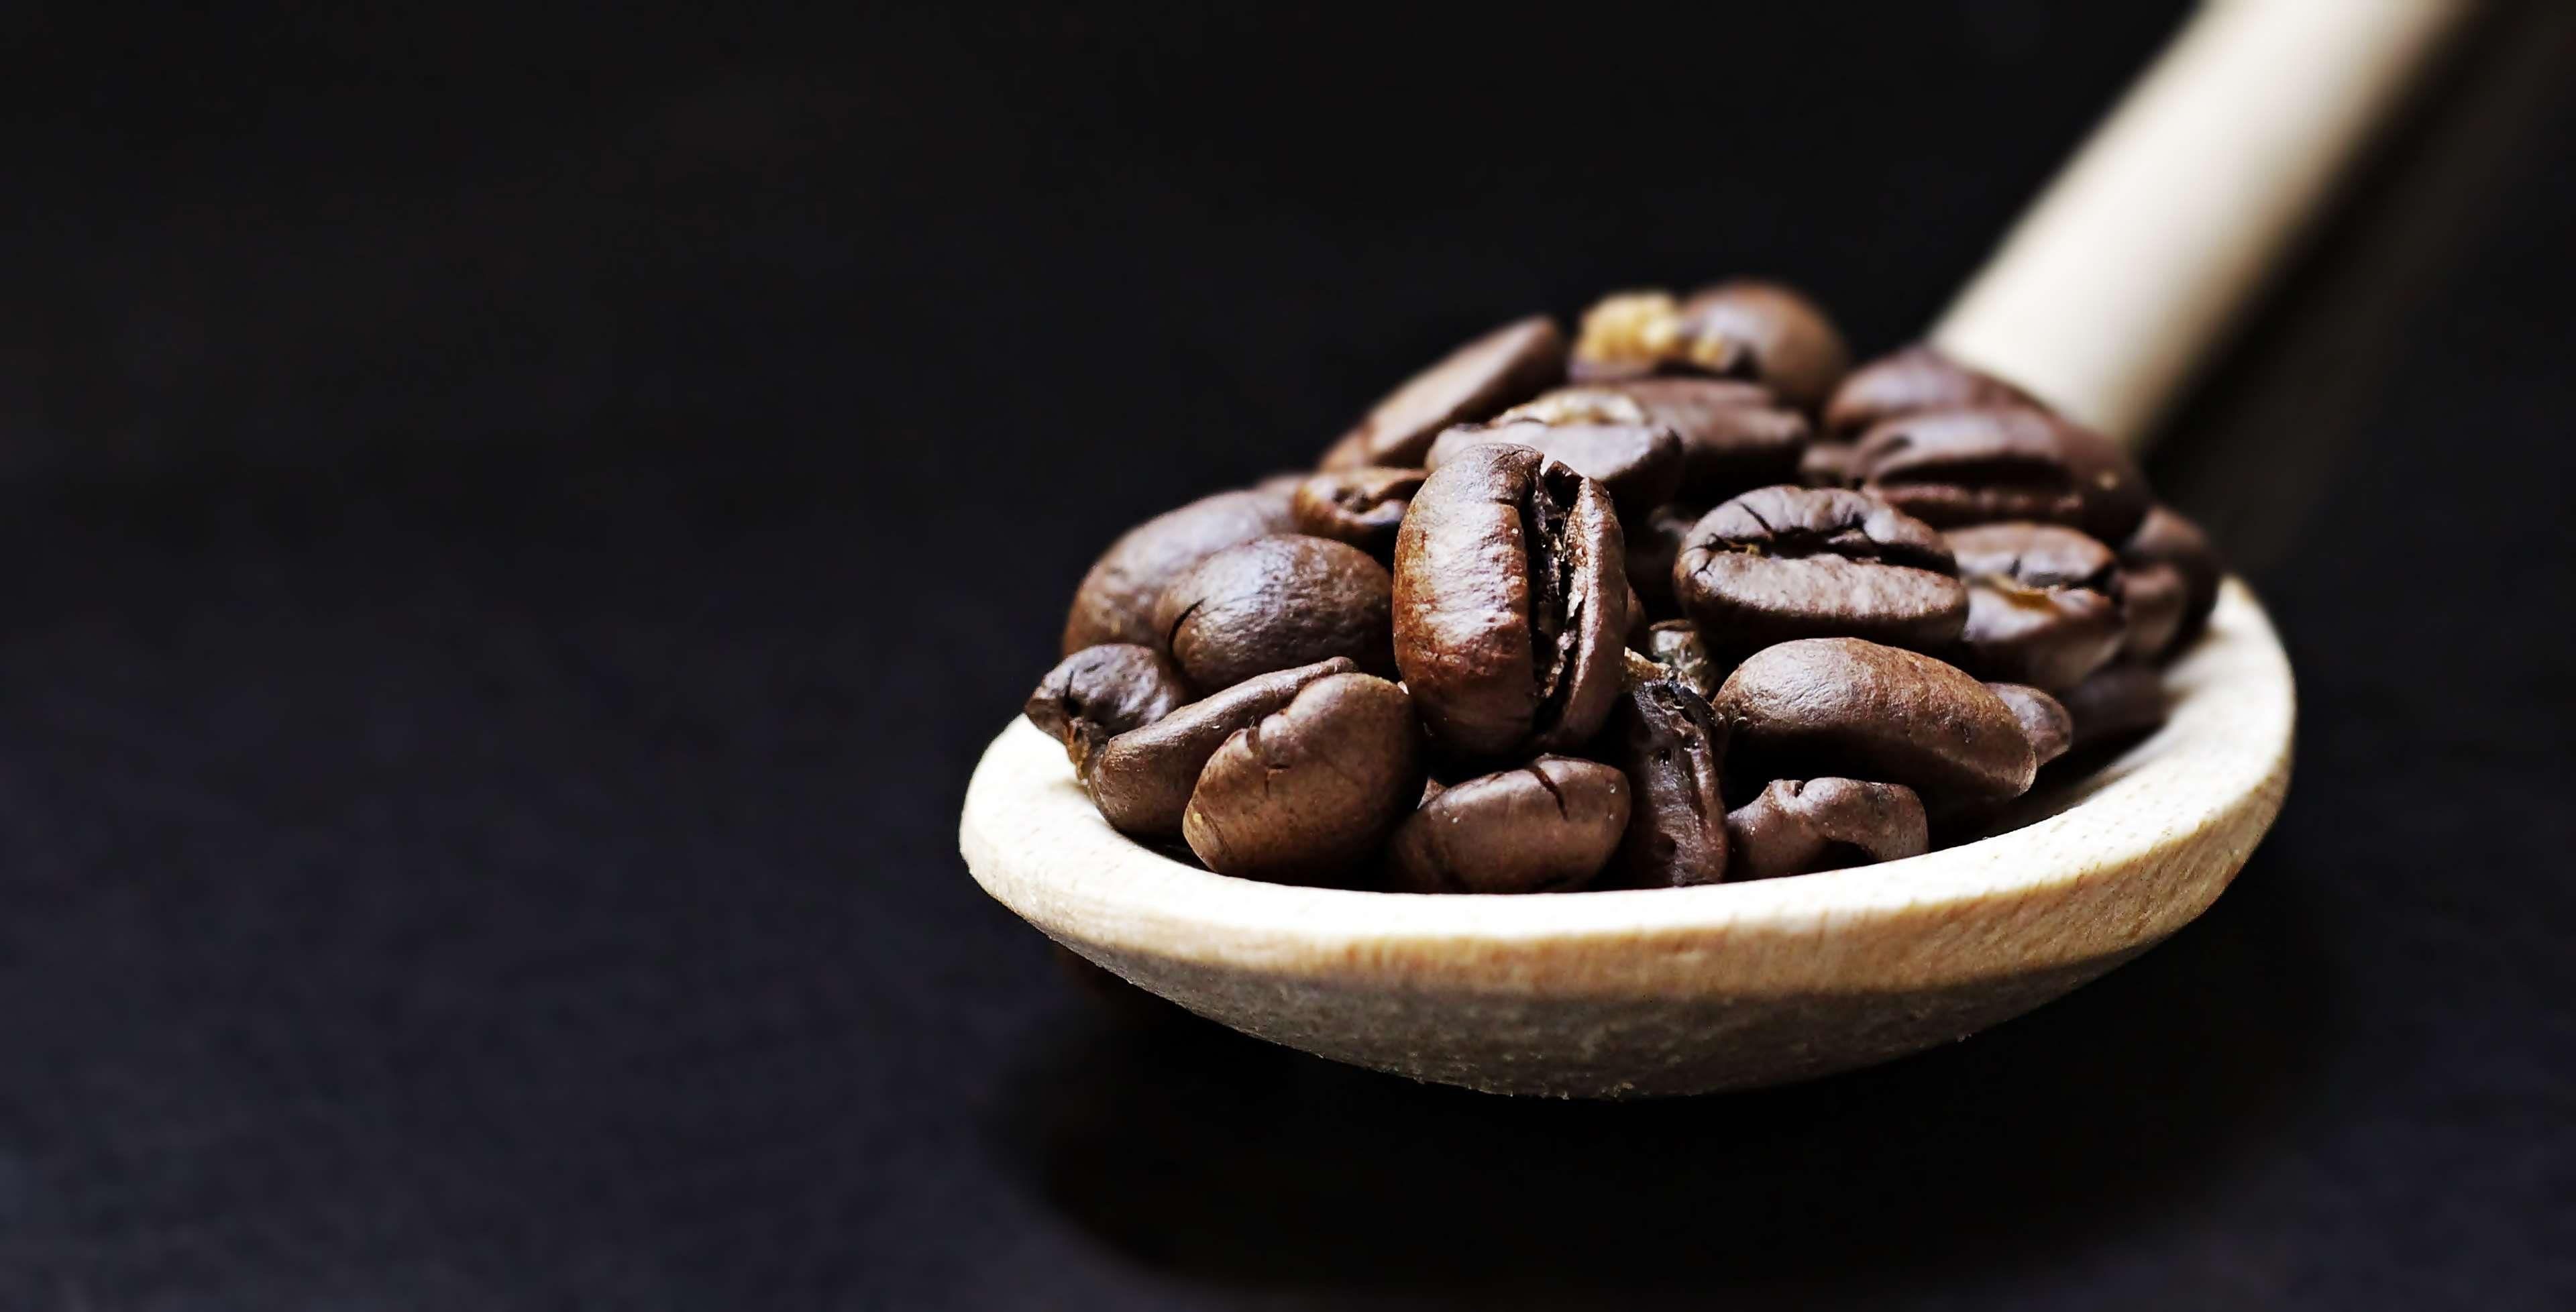 Кофейные клизмы при онкологии - вред или польза клизм из кофе при онкологии